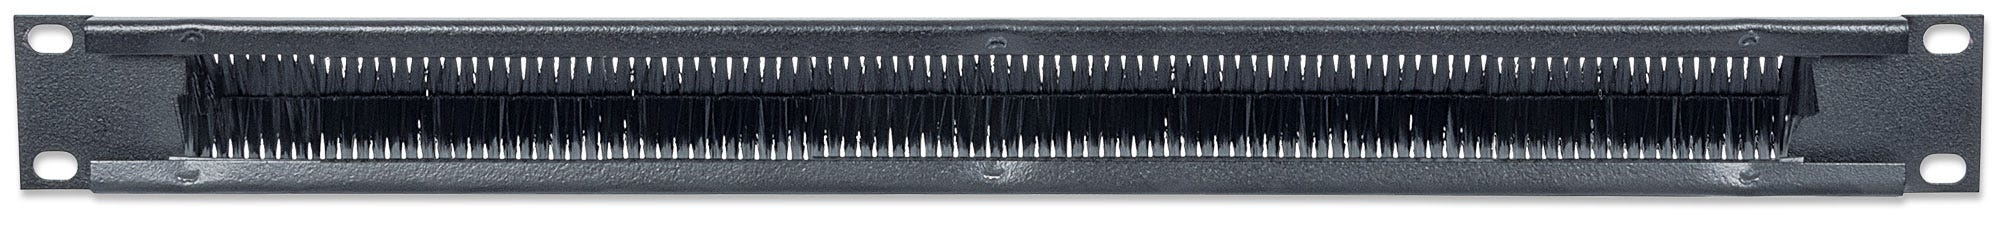 Intellinet 19" Kabeldurchführung, 1 HE, mit Bürstenleiste, schwarz - Rack-Blende mit Bürste für Kabeldurchführung - Schwarz, RAL 9005 - 1U - 48.3 cm (19")